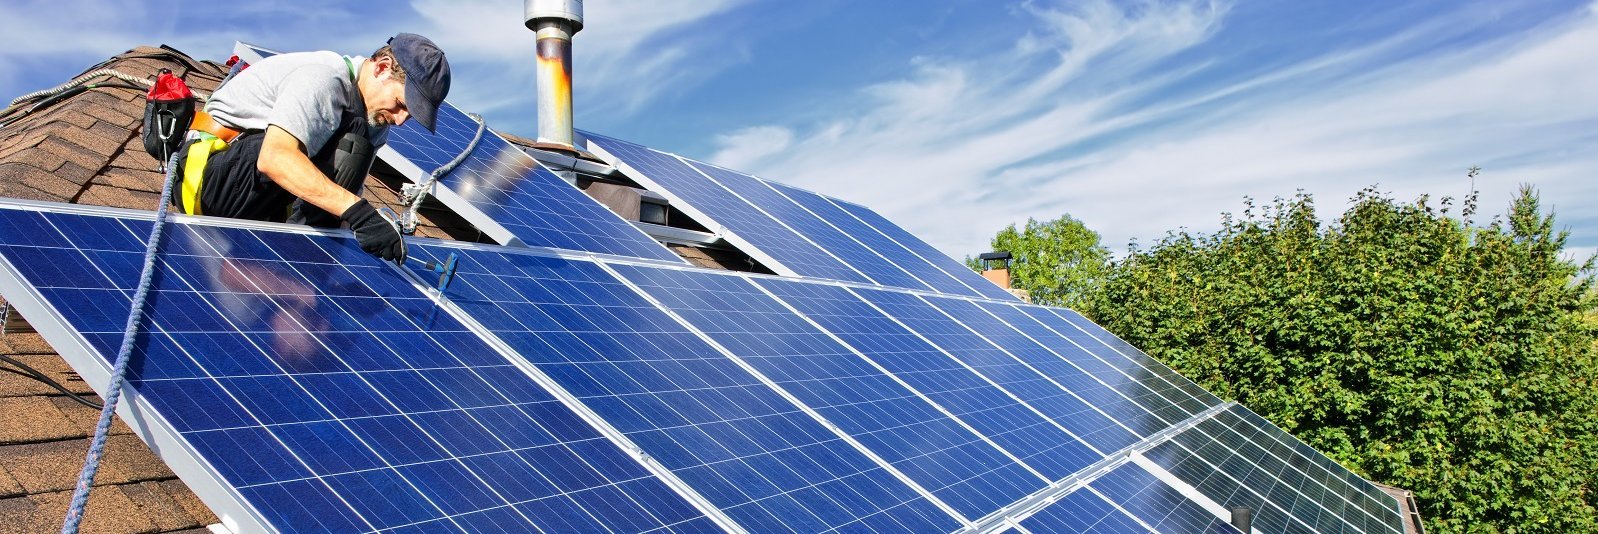 Handwerker montiert Solarpaneele auf Dach